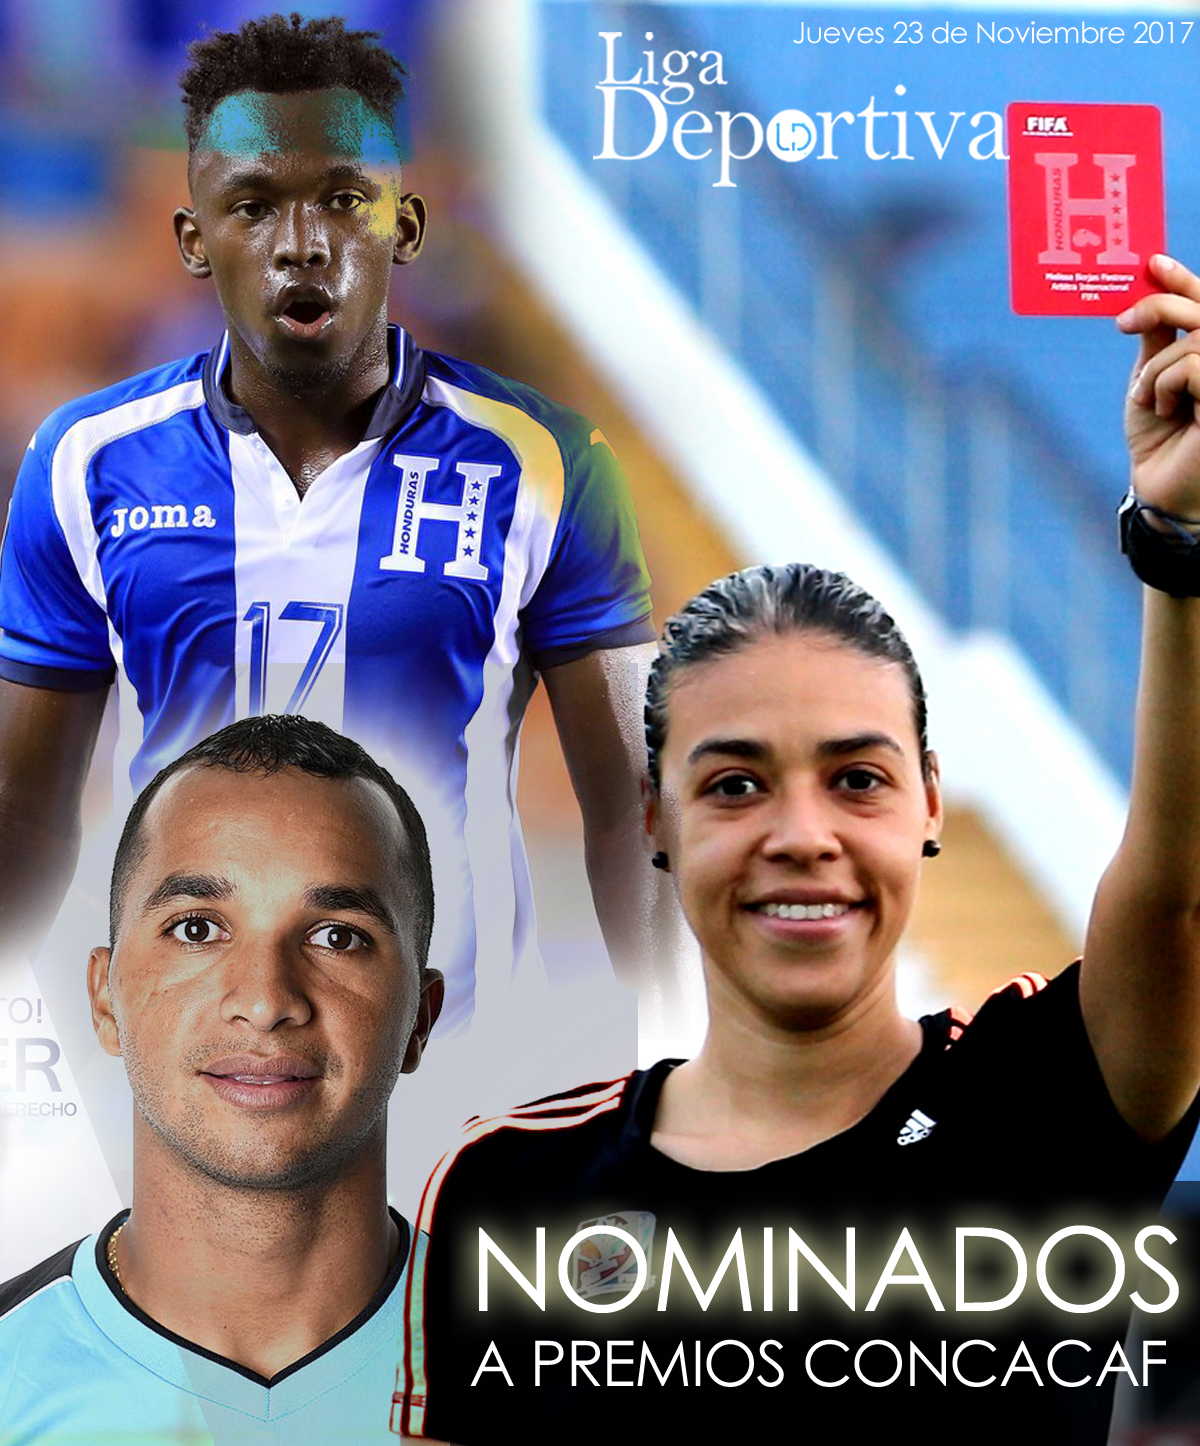 Alberth Elis, Donis Escober y Melissa Pastrana nominados a los Premios CONCACAF